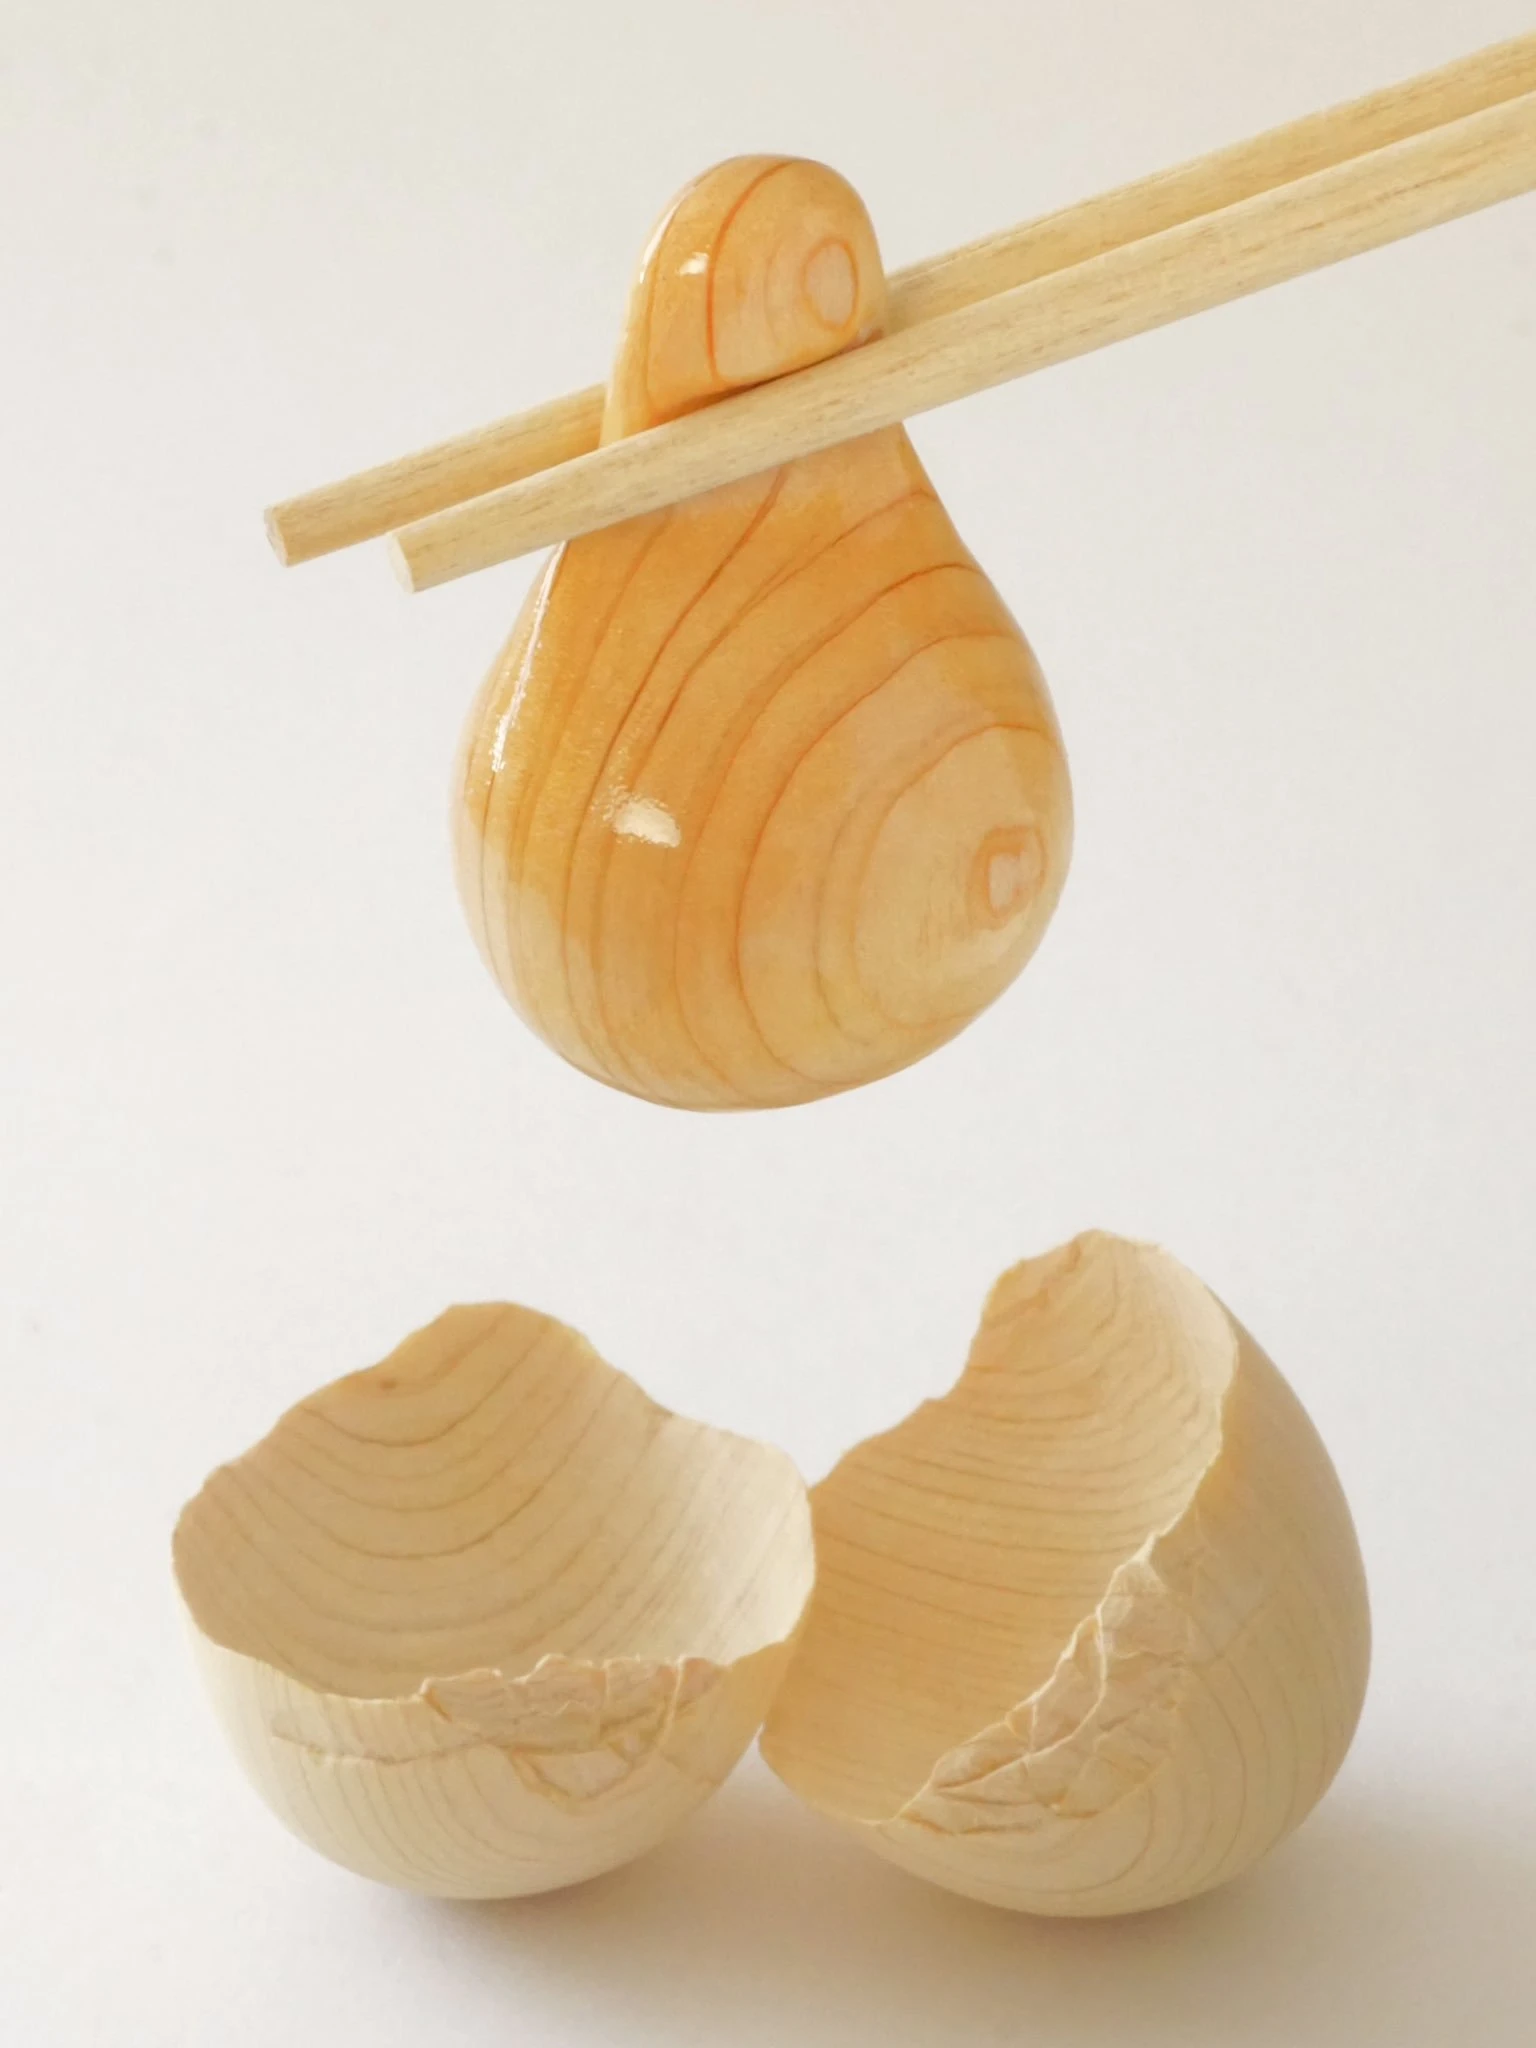 木なのにプルプル！ まさかの「木彫りの生卵」割れた殻のヒビもすごい.jpg